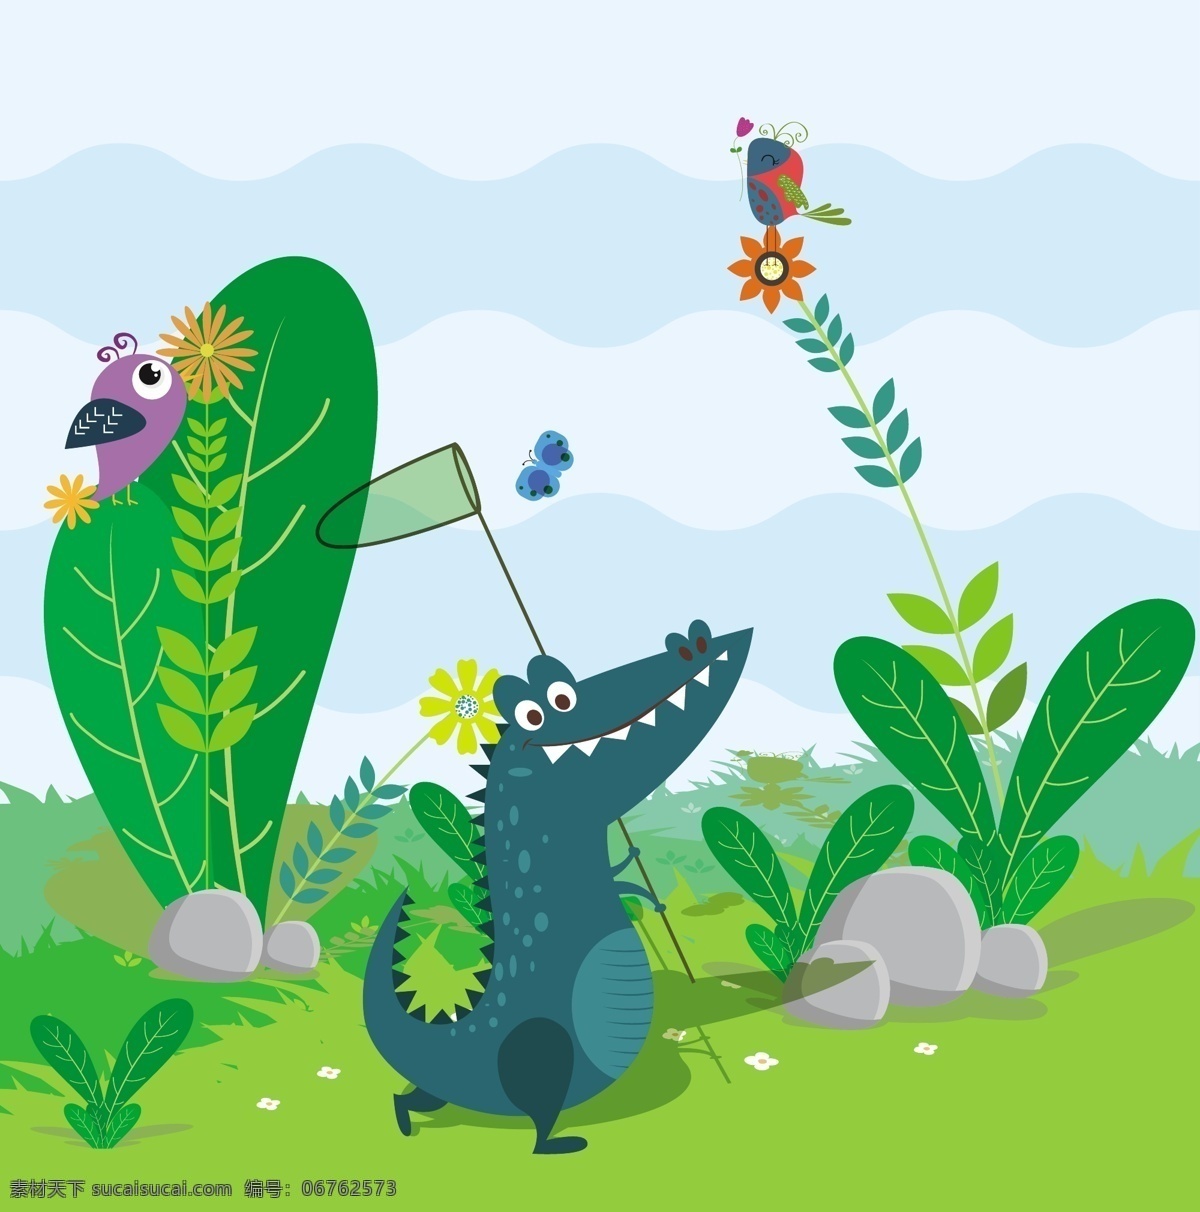 野生动物 背景 色卡 通 风格 鳄鱼 图标 植物 绿色植物 卡通 鸟 花鸟 动物 矢量背景